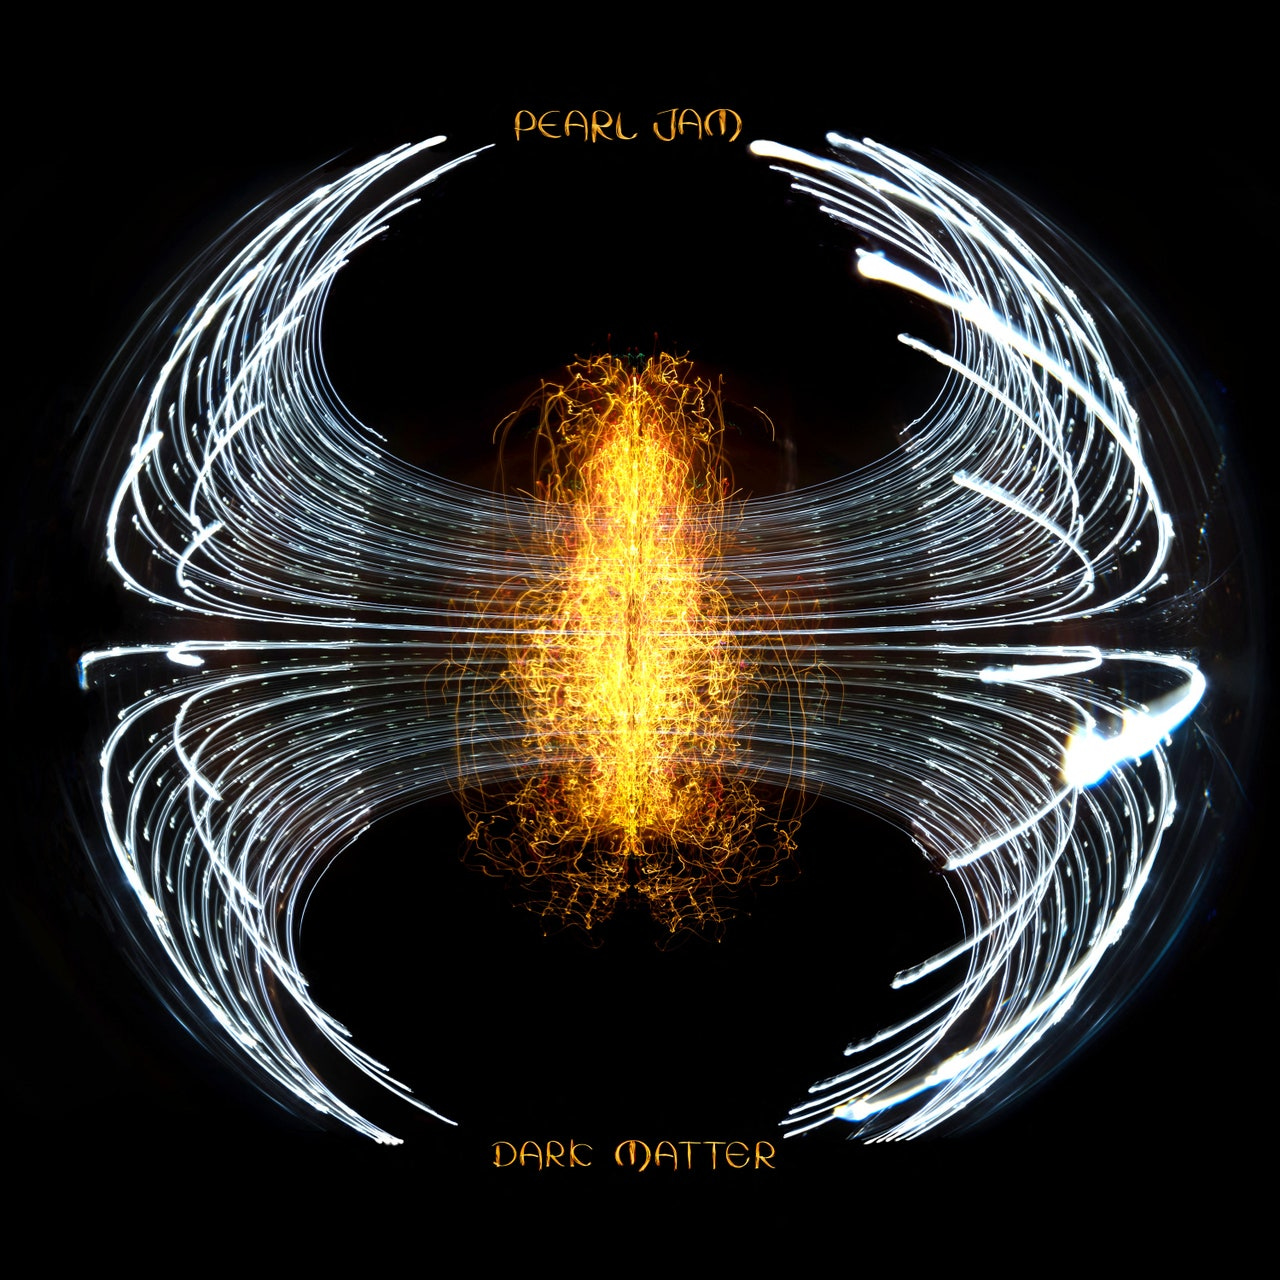 Pearl Jam: Dark Matter Album Review | Pitchfork